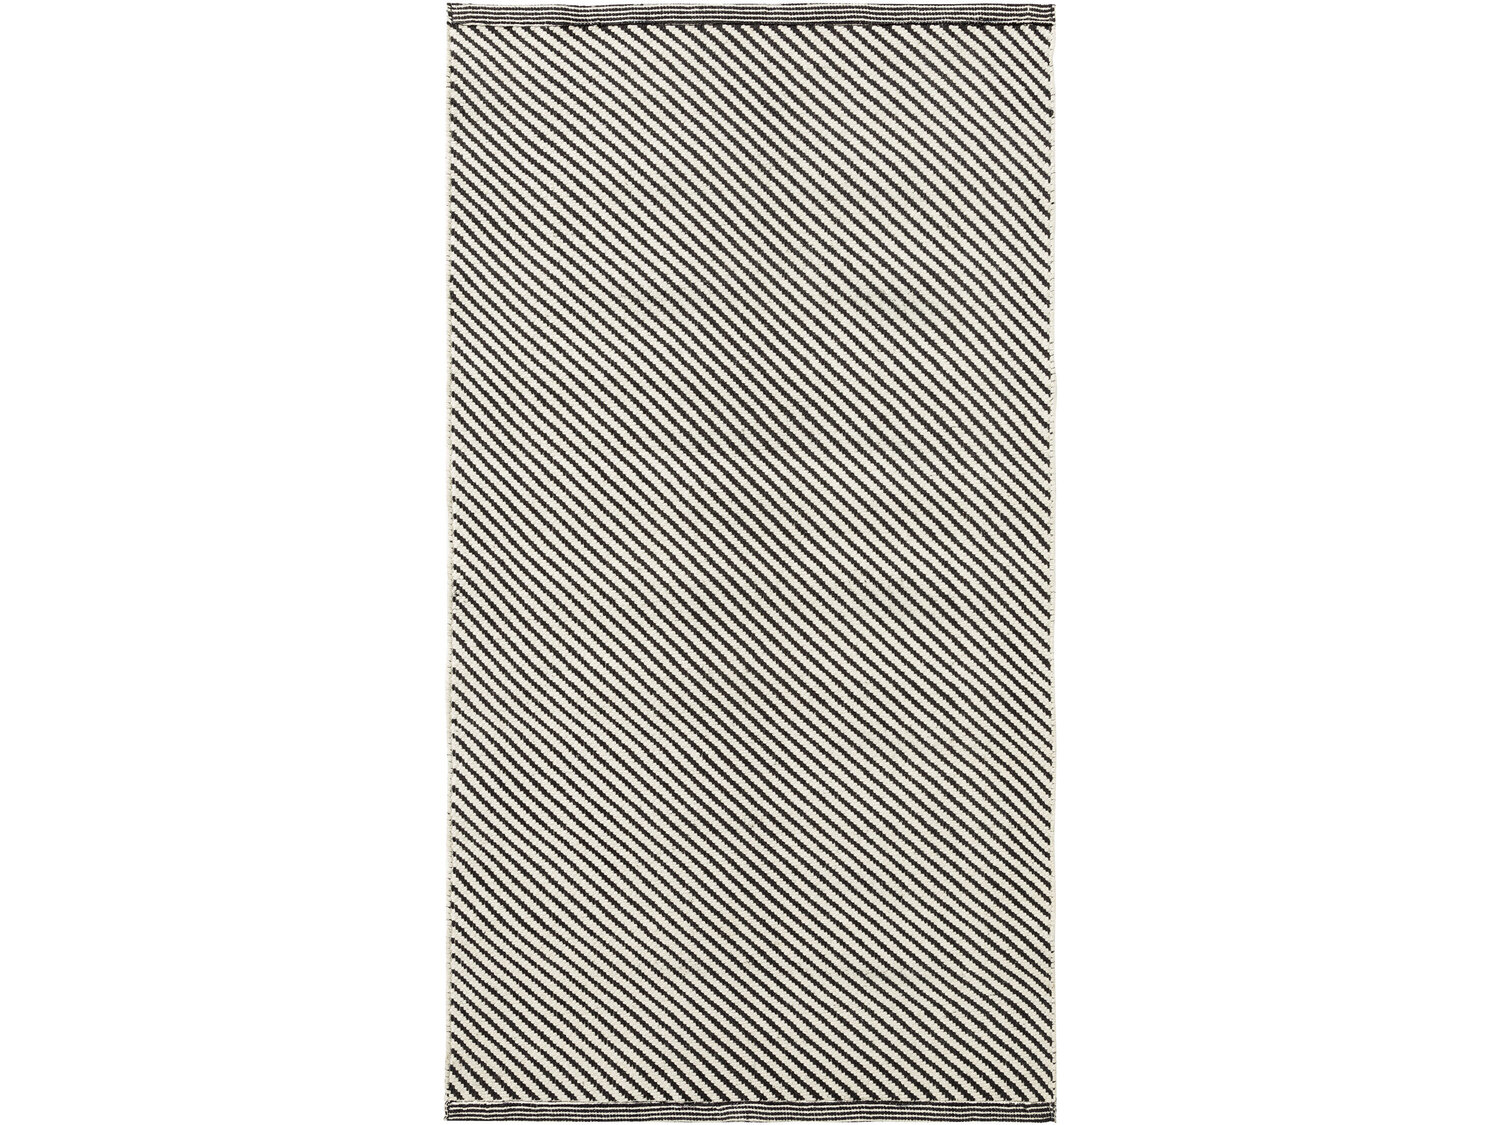 Dywan Meradiso, cena 29,99 PLN 
- 100% bawełny
- 67 x 120 cm
- zapobiegający przesuwaniu ...